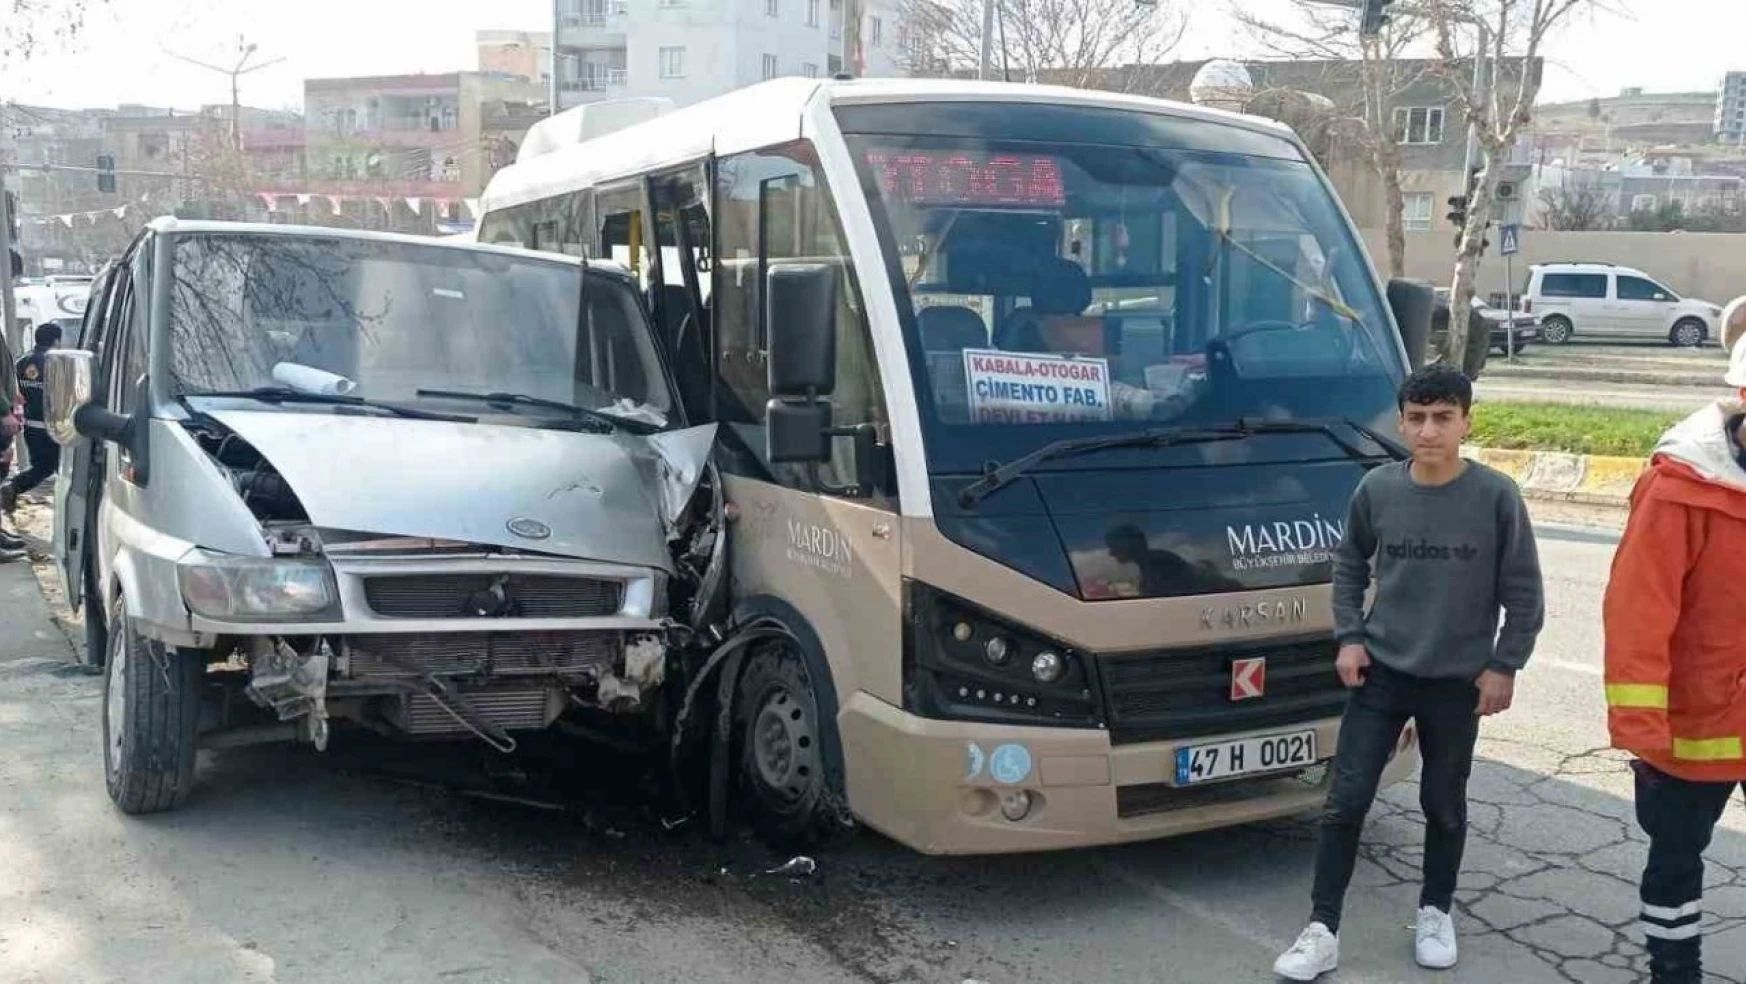 Mardin'de 2 minibüs çarpıştı: 6 yaralı